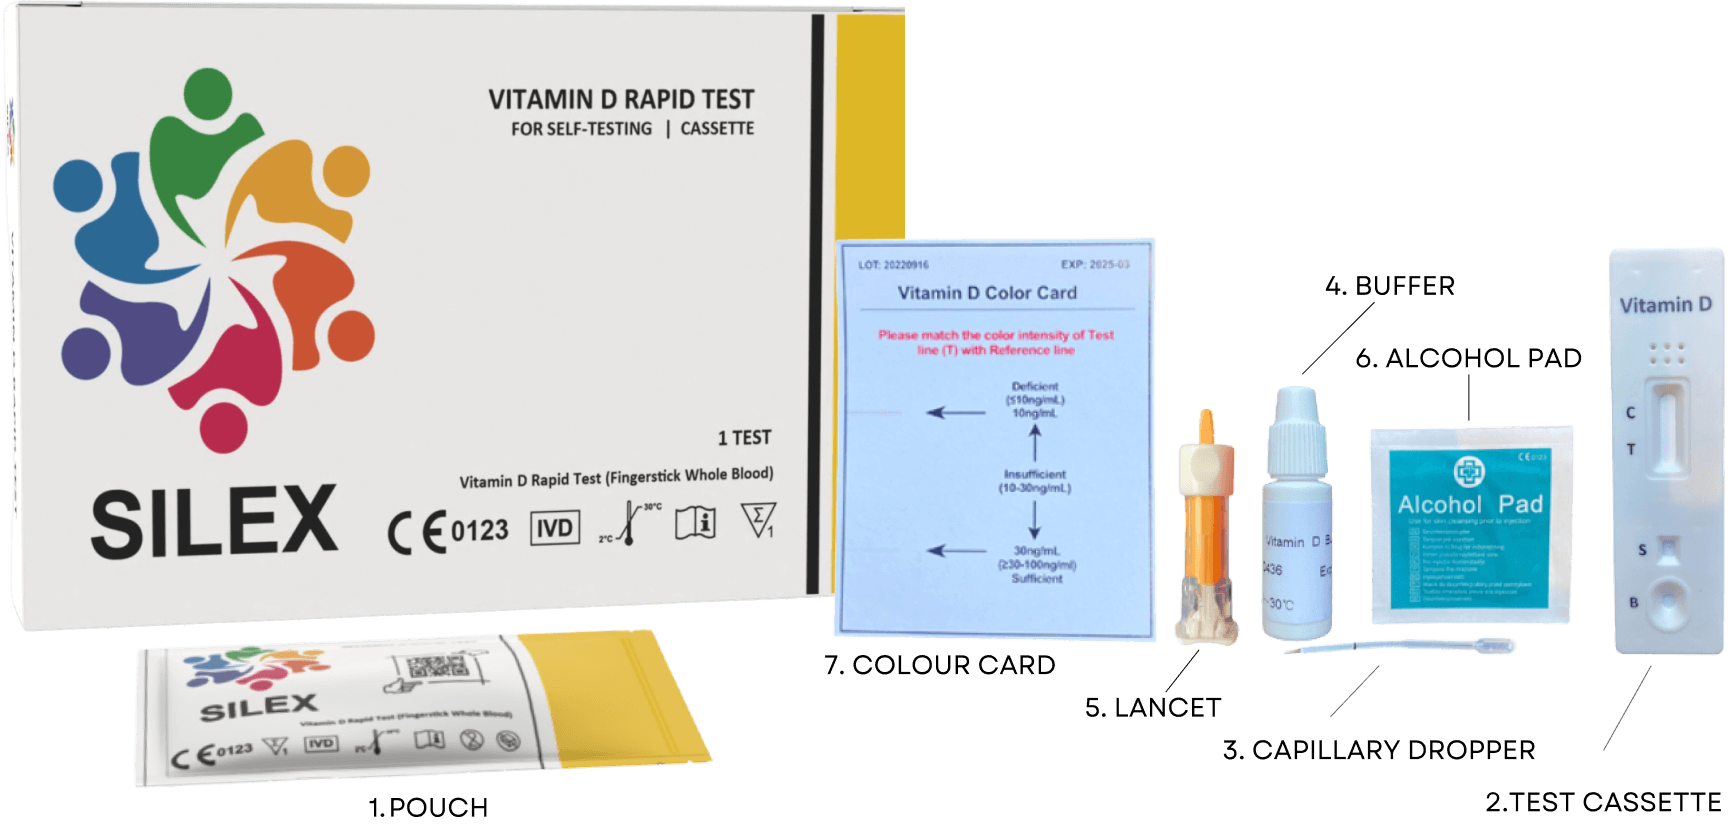 Vitamin D Test Contents